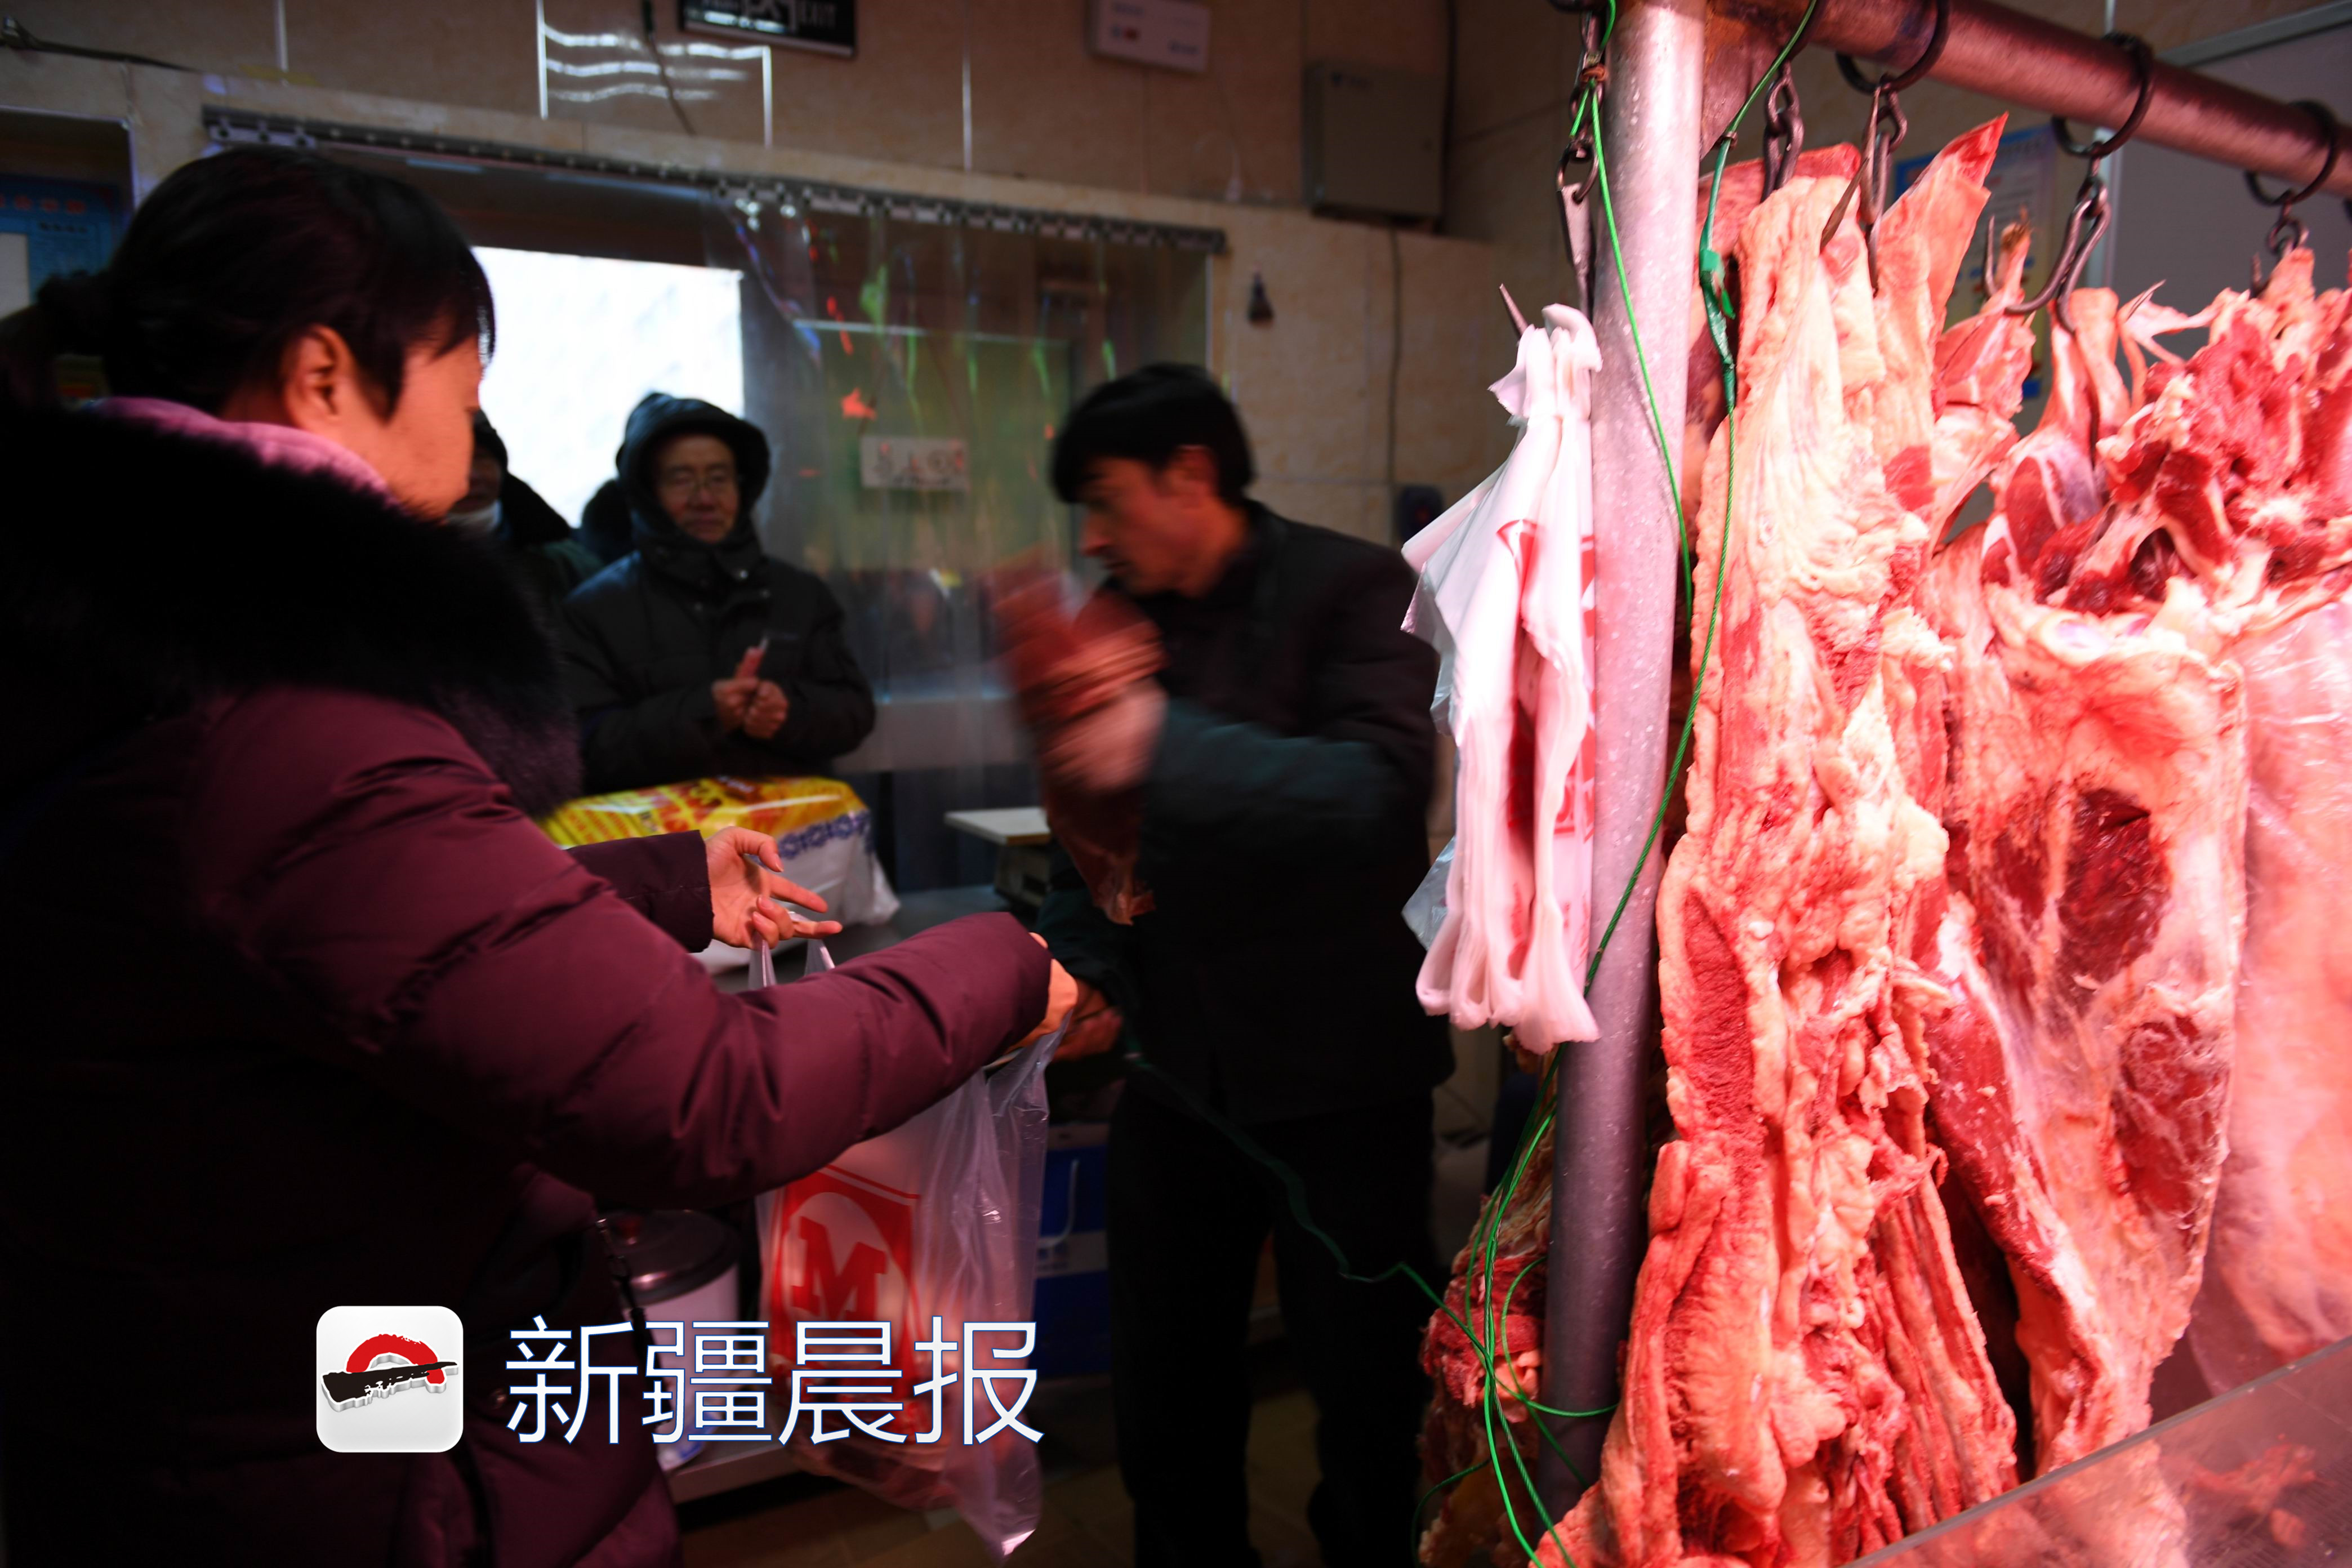 乌市储备肉销售火爆 鲜羊肉40元一公斤 鲜牛肉52元一公斤